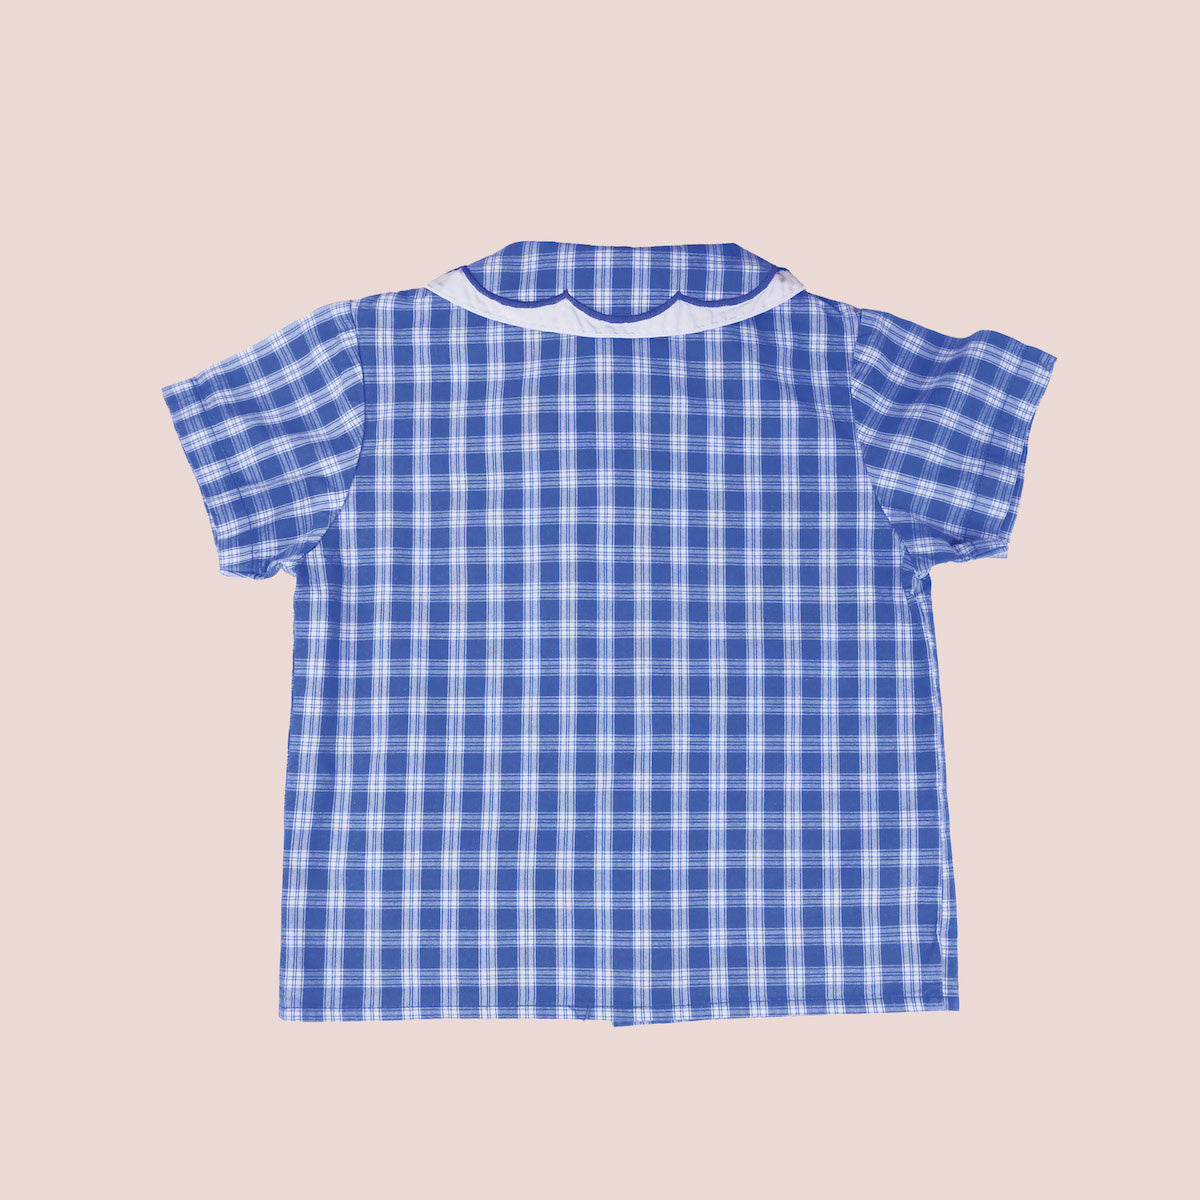 chemise à col claudine et carreaux bleus vintage pour bébé